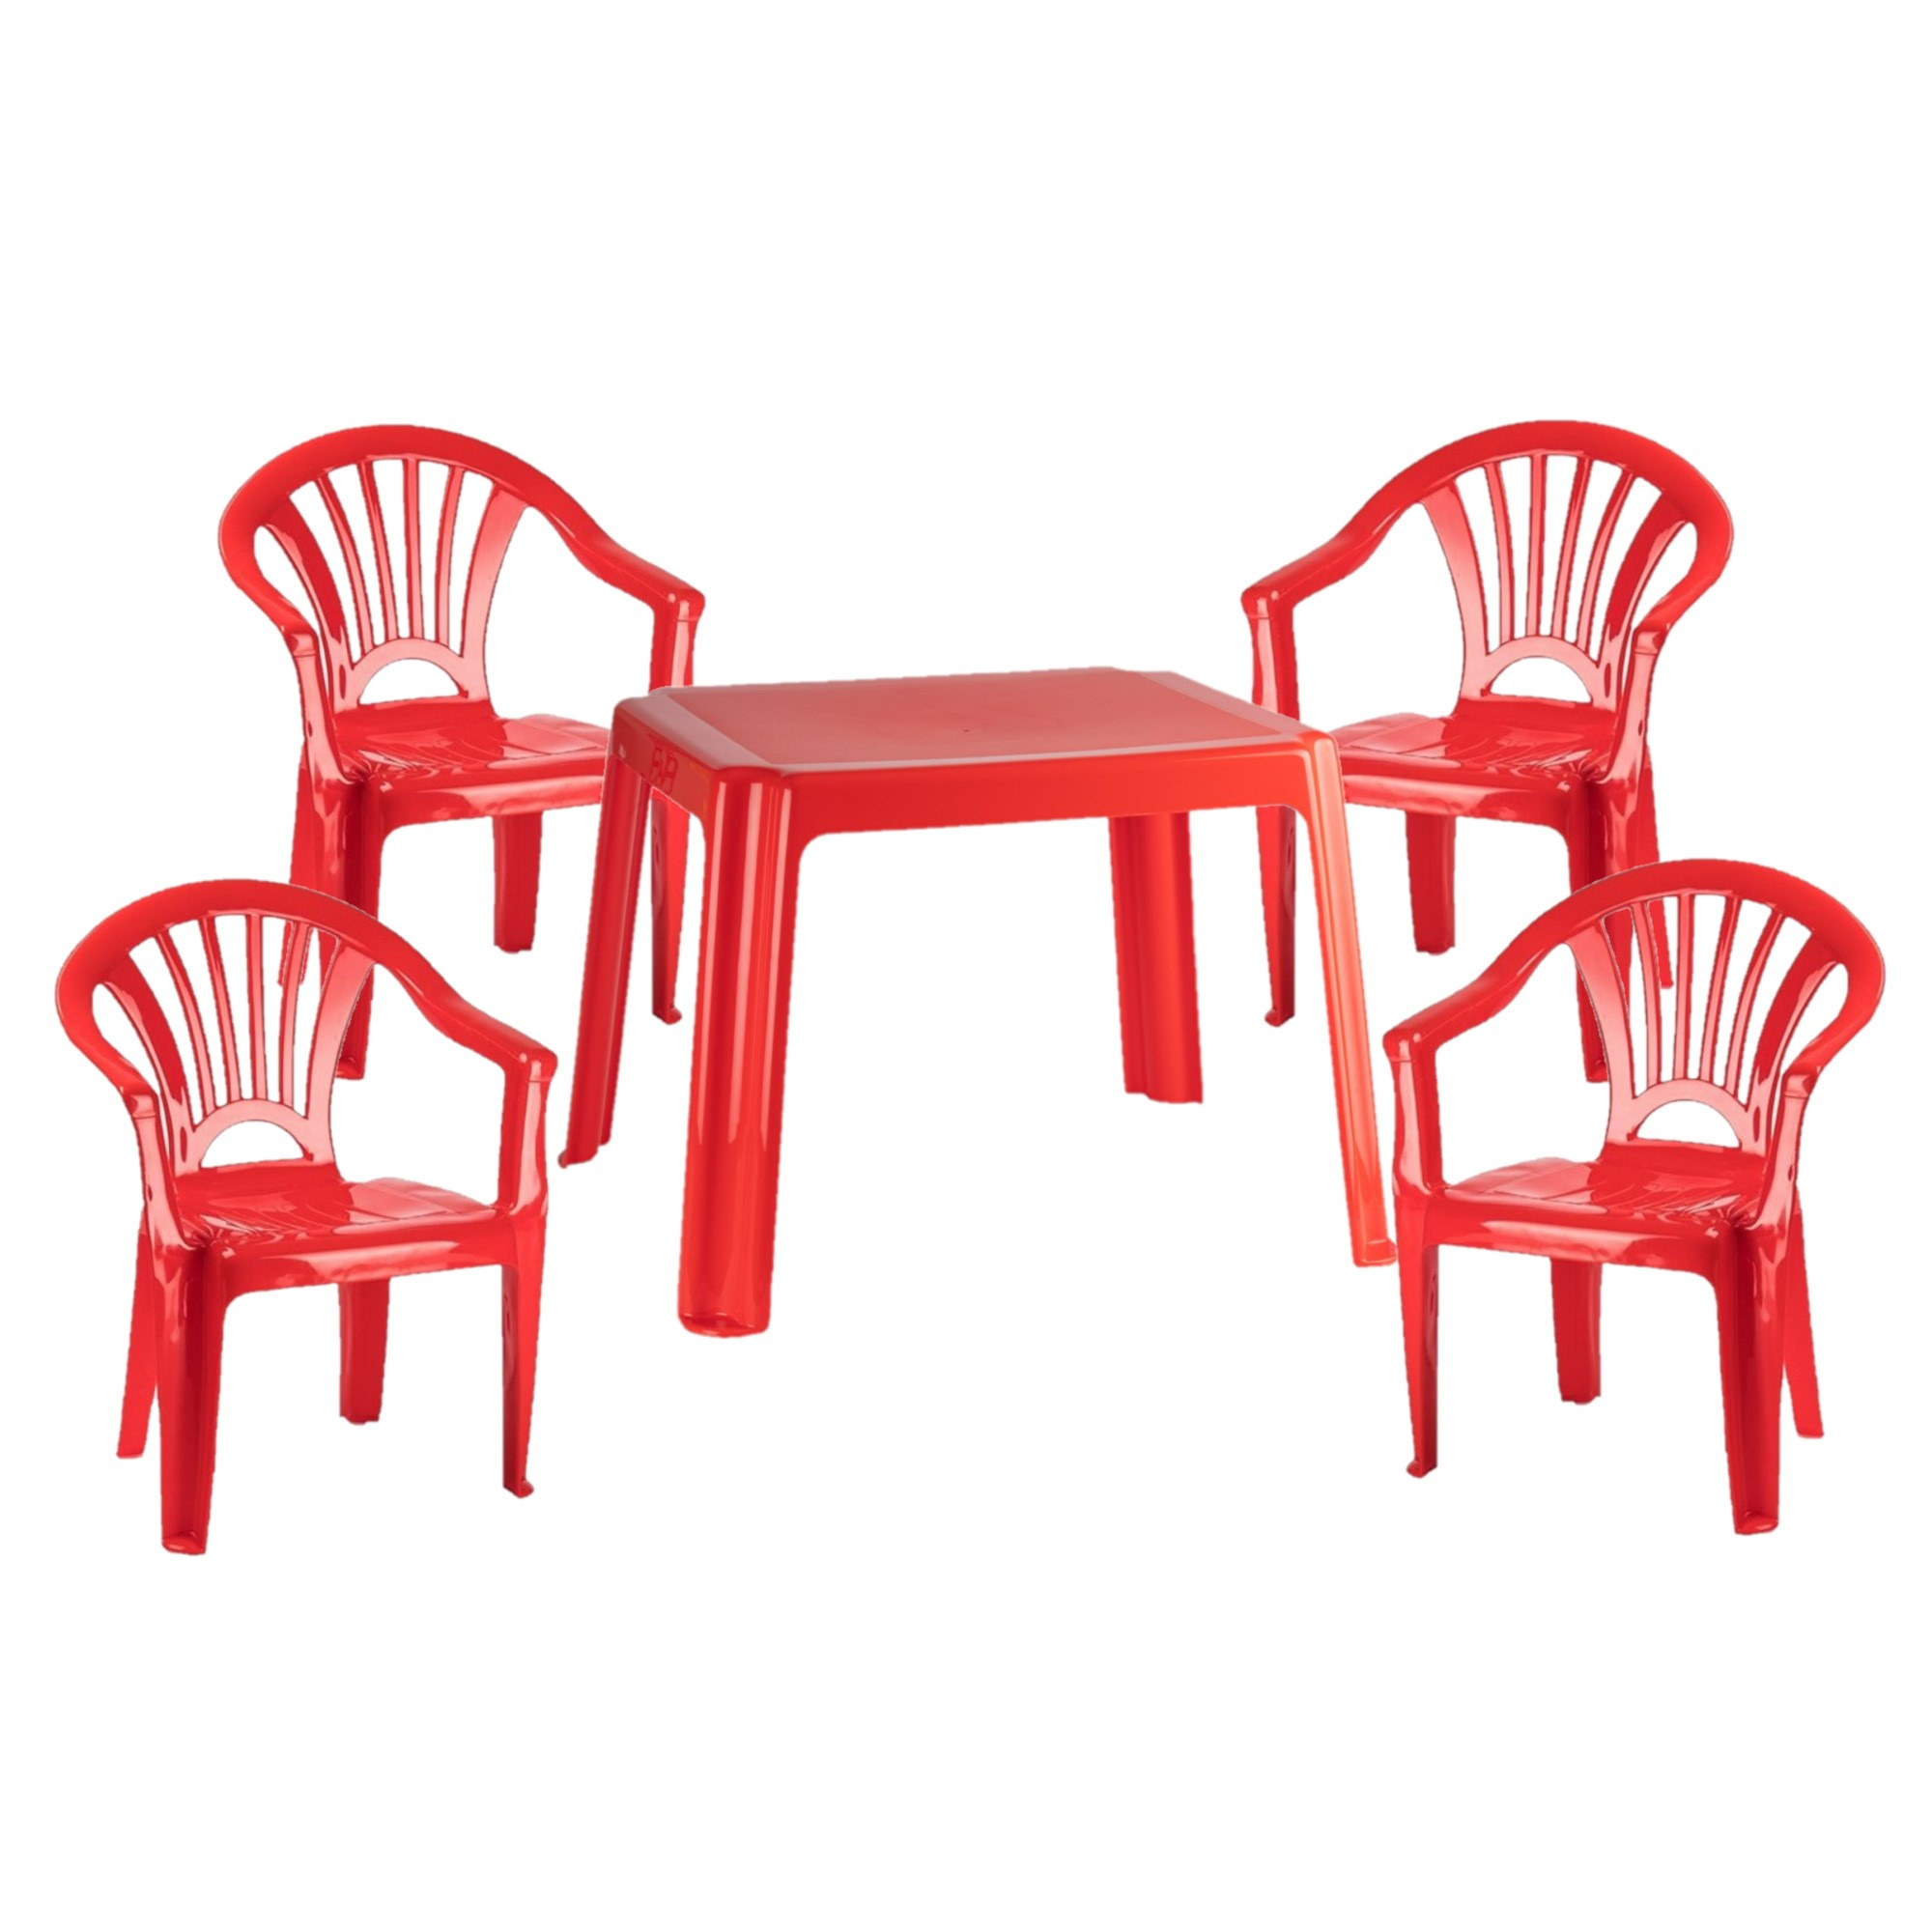 Kunststof kinder meubel set tafel met 4 stoelen rood